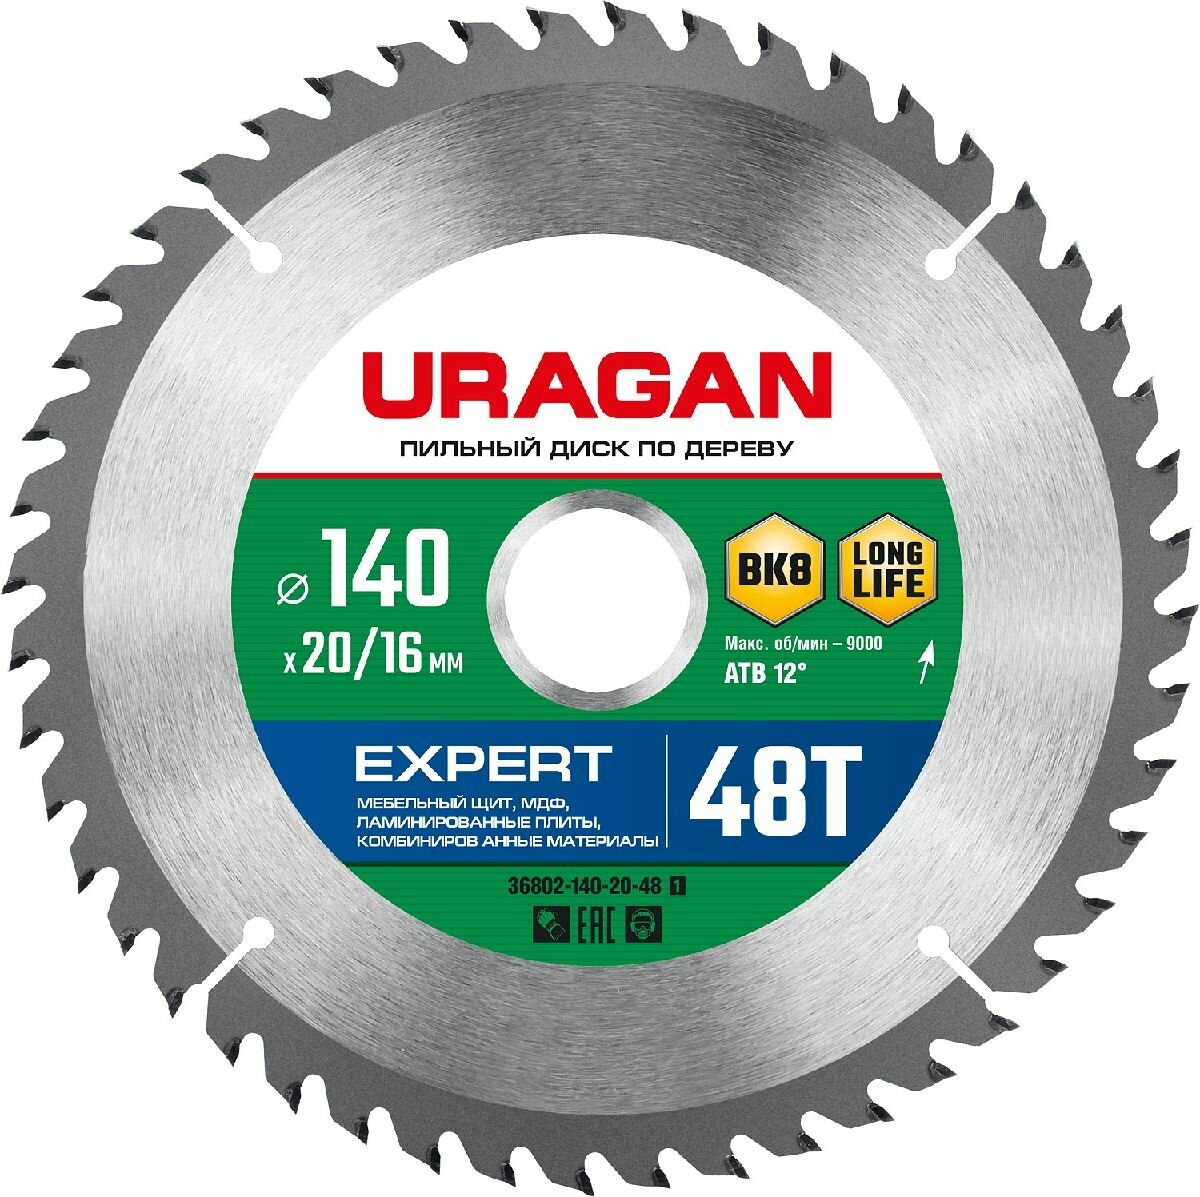 URAGAN Expert 140х20 16мм 48Т, диск пильный по дереву (36802-140-20-48_z01)